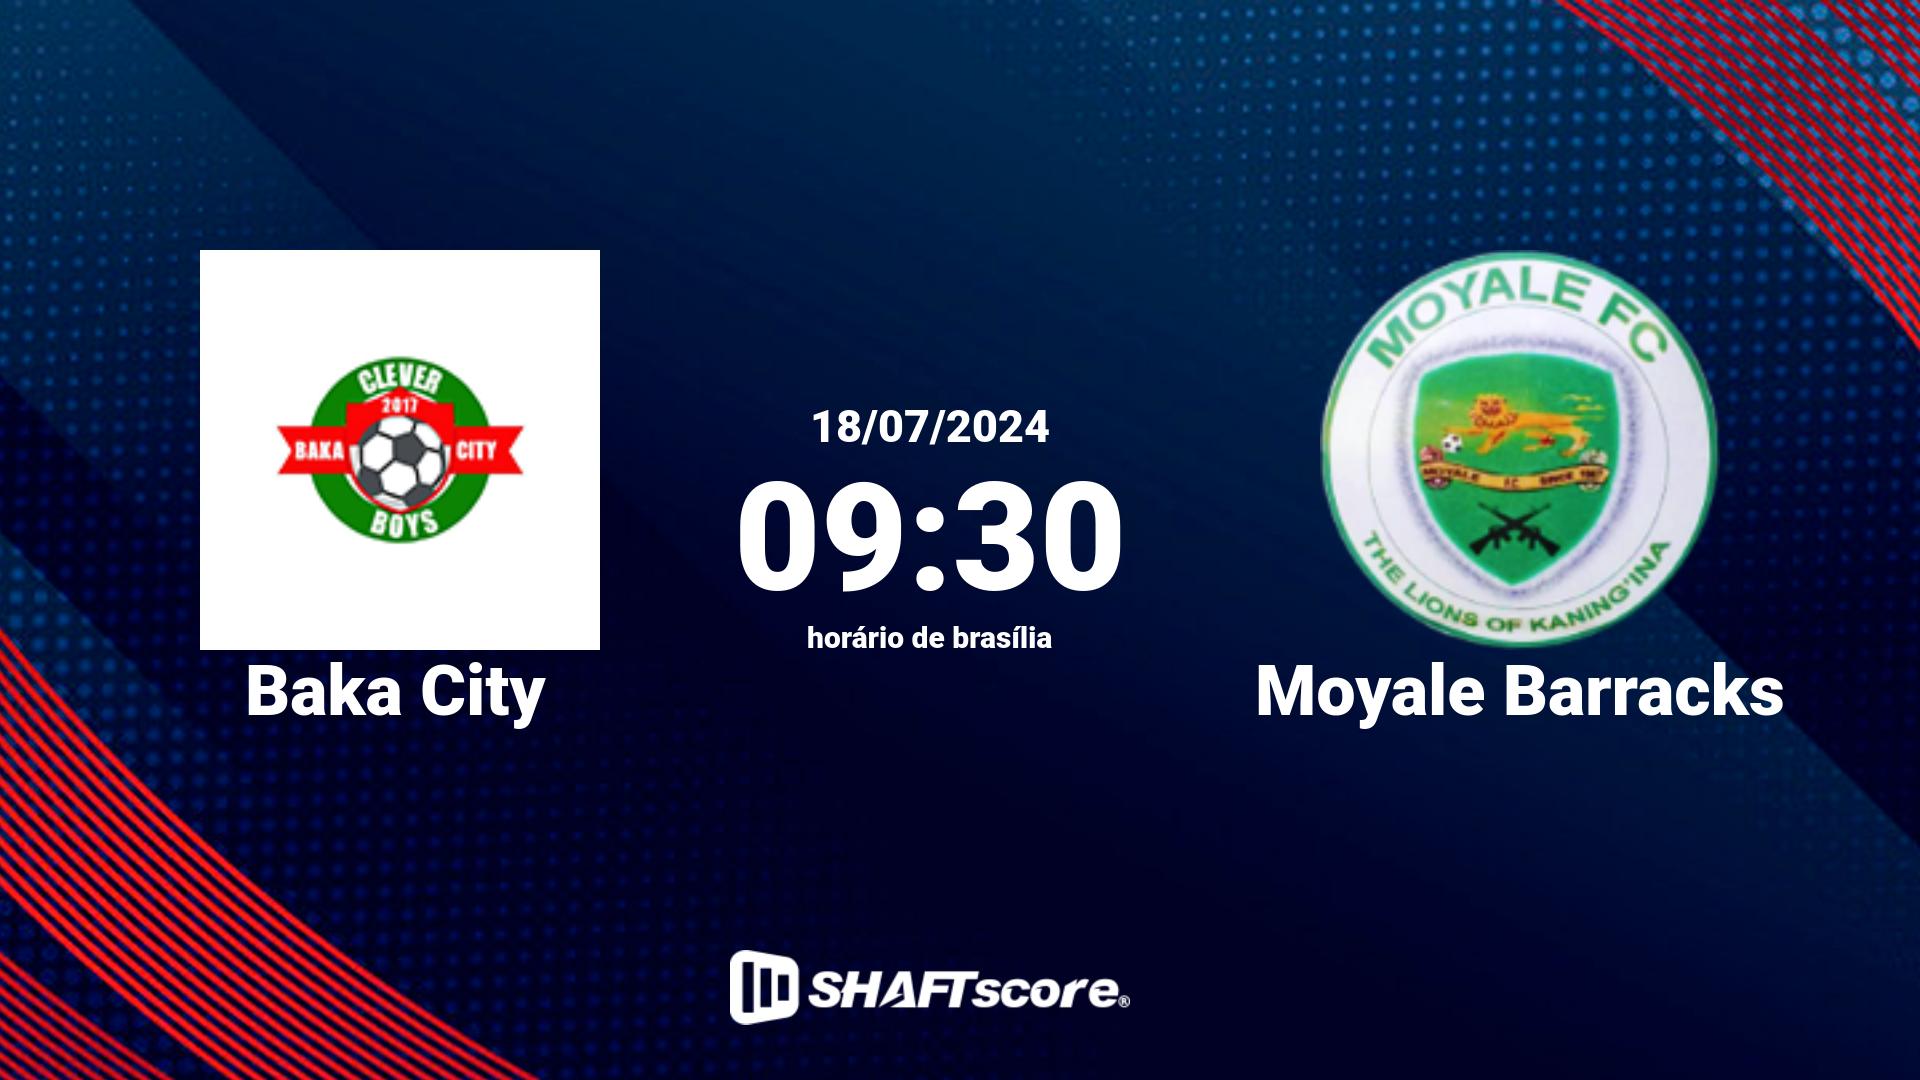 Estatísticas do jogo Baka City vs Moyale Barracks 18.07 09:30